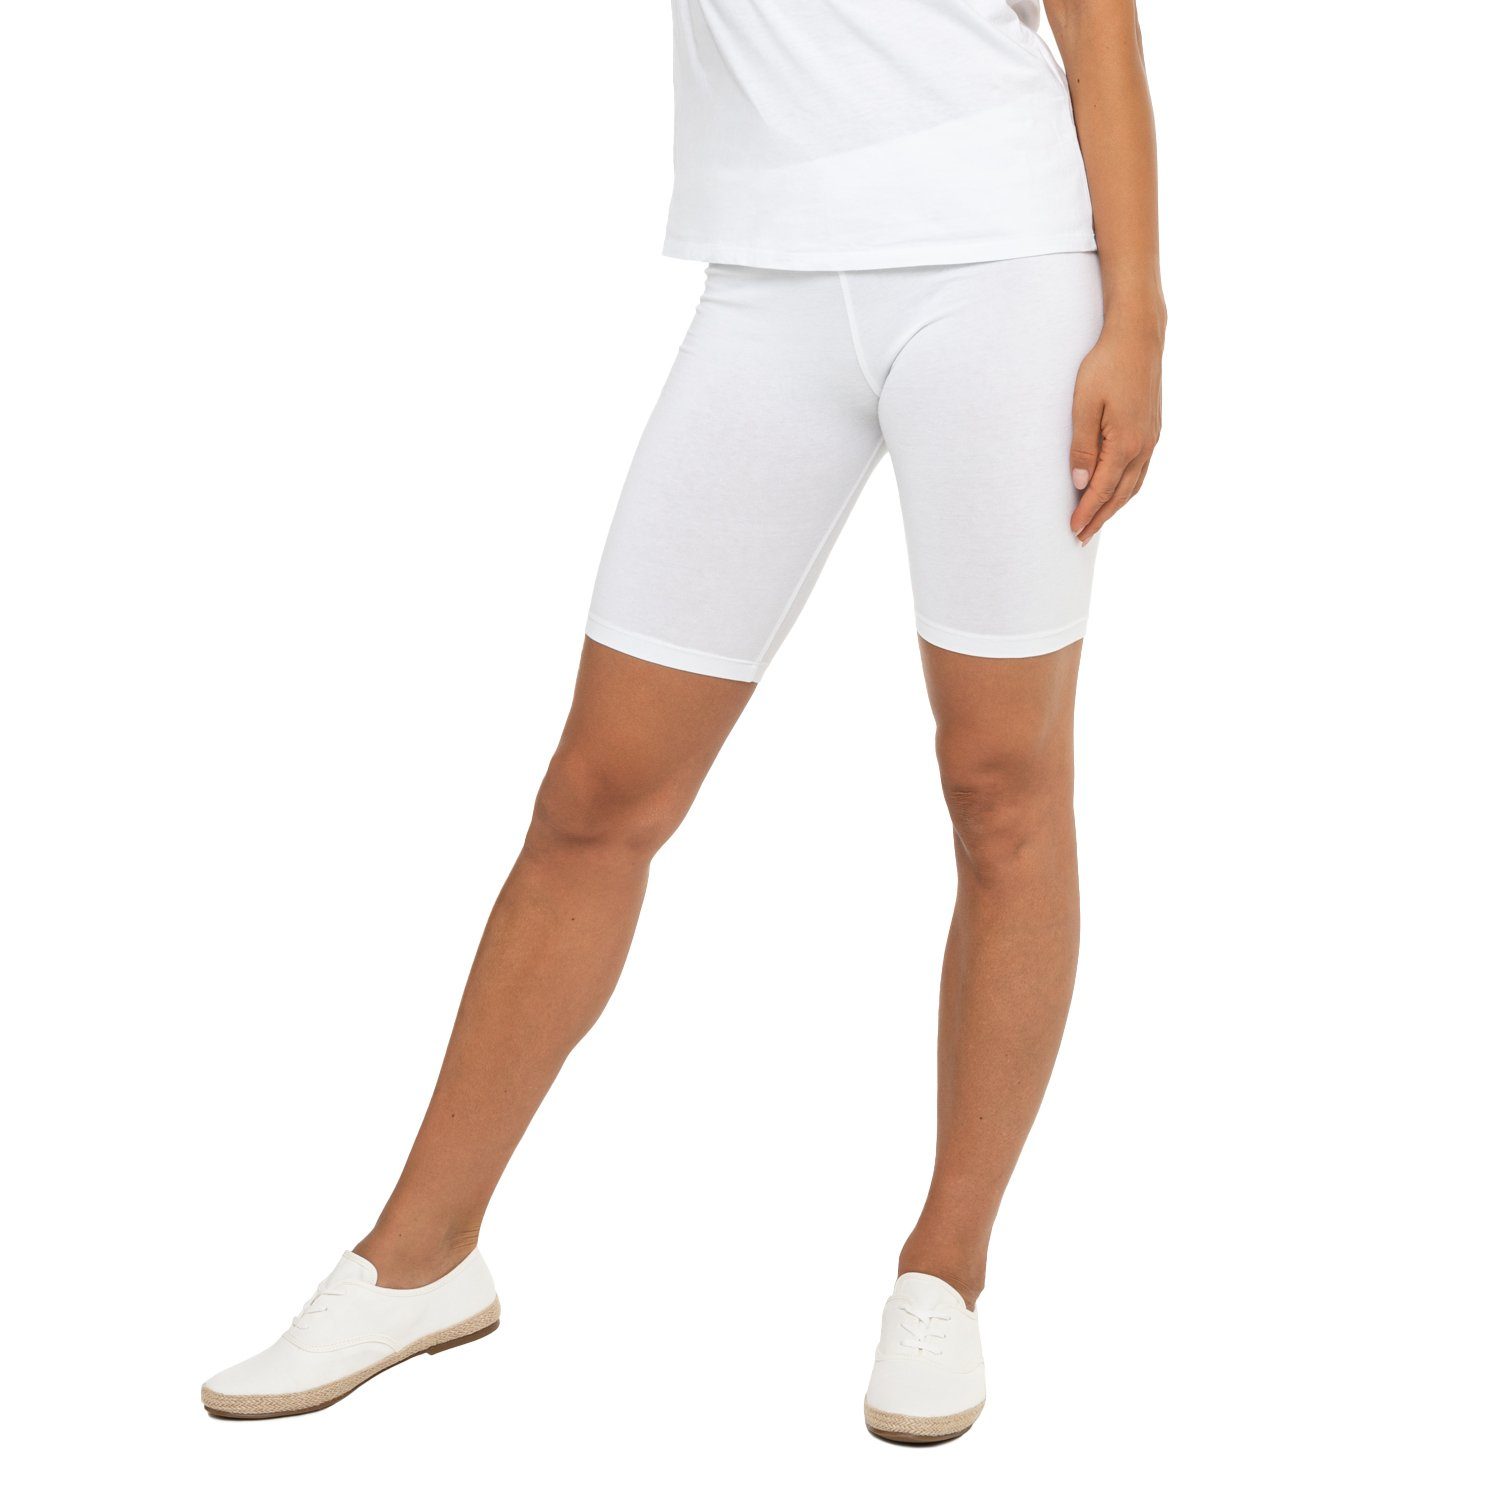 celodoro Shorts Damen Kurzleggings Stretch-Jersey Radlerhose aus Baumwolle Weiß